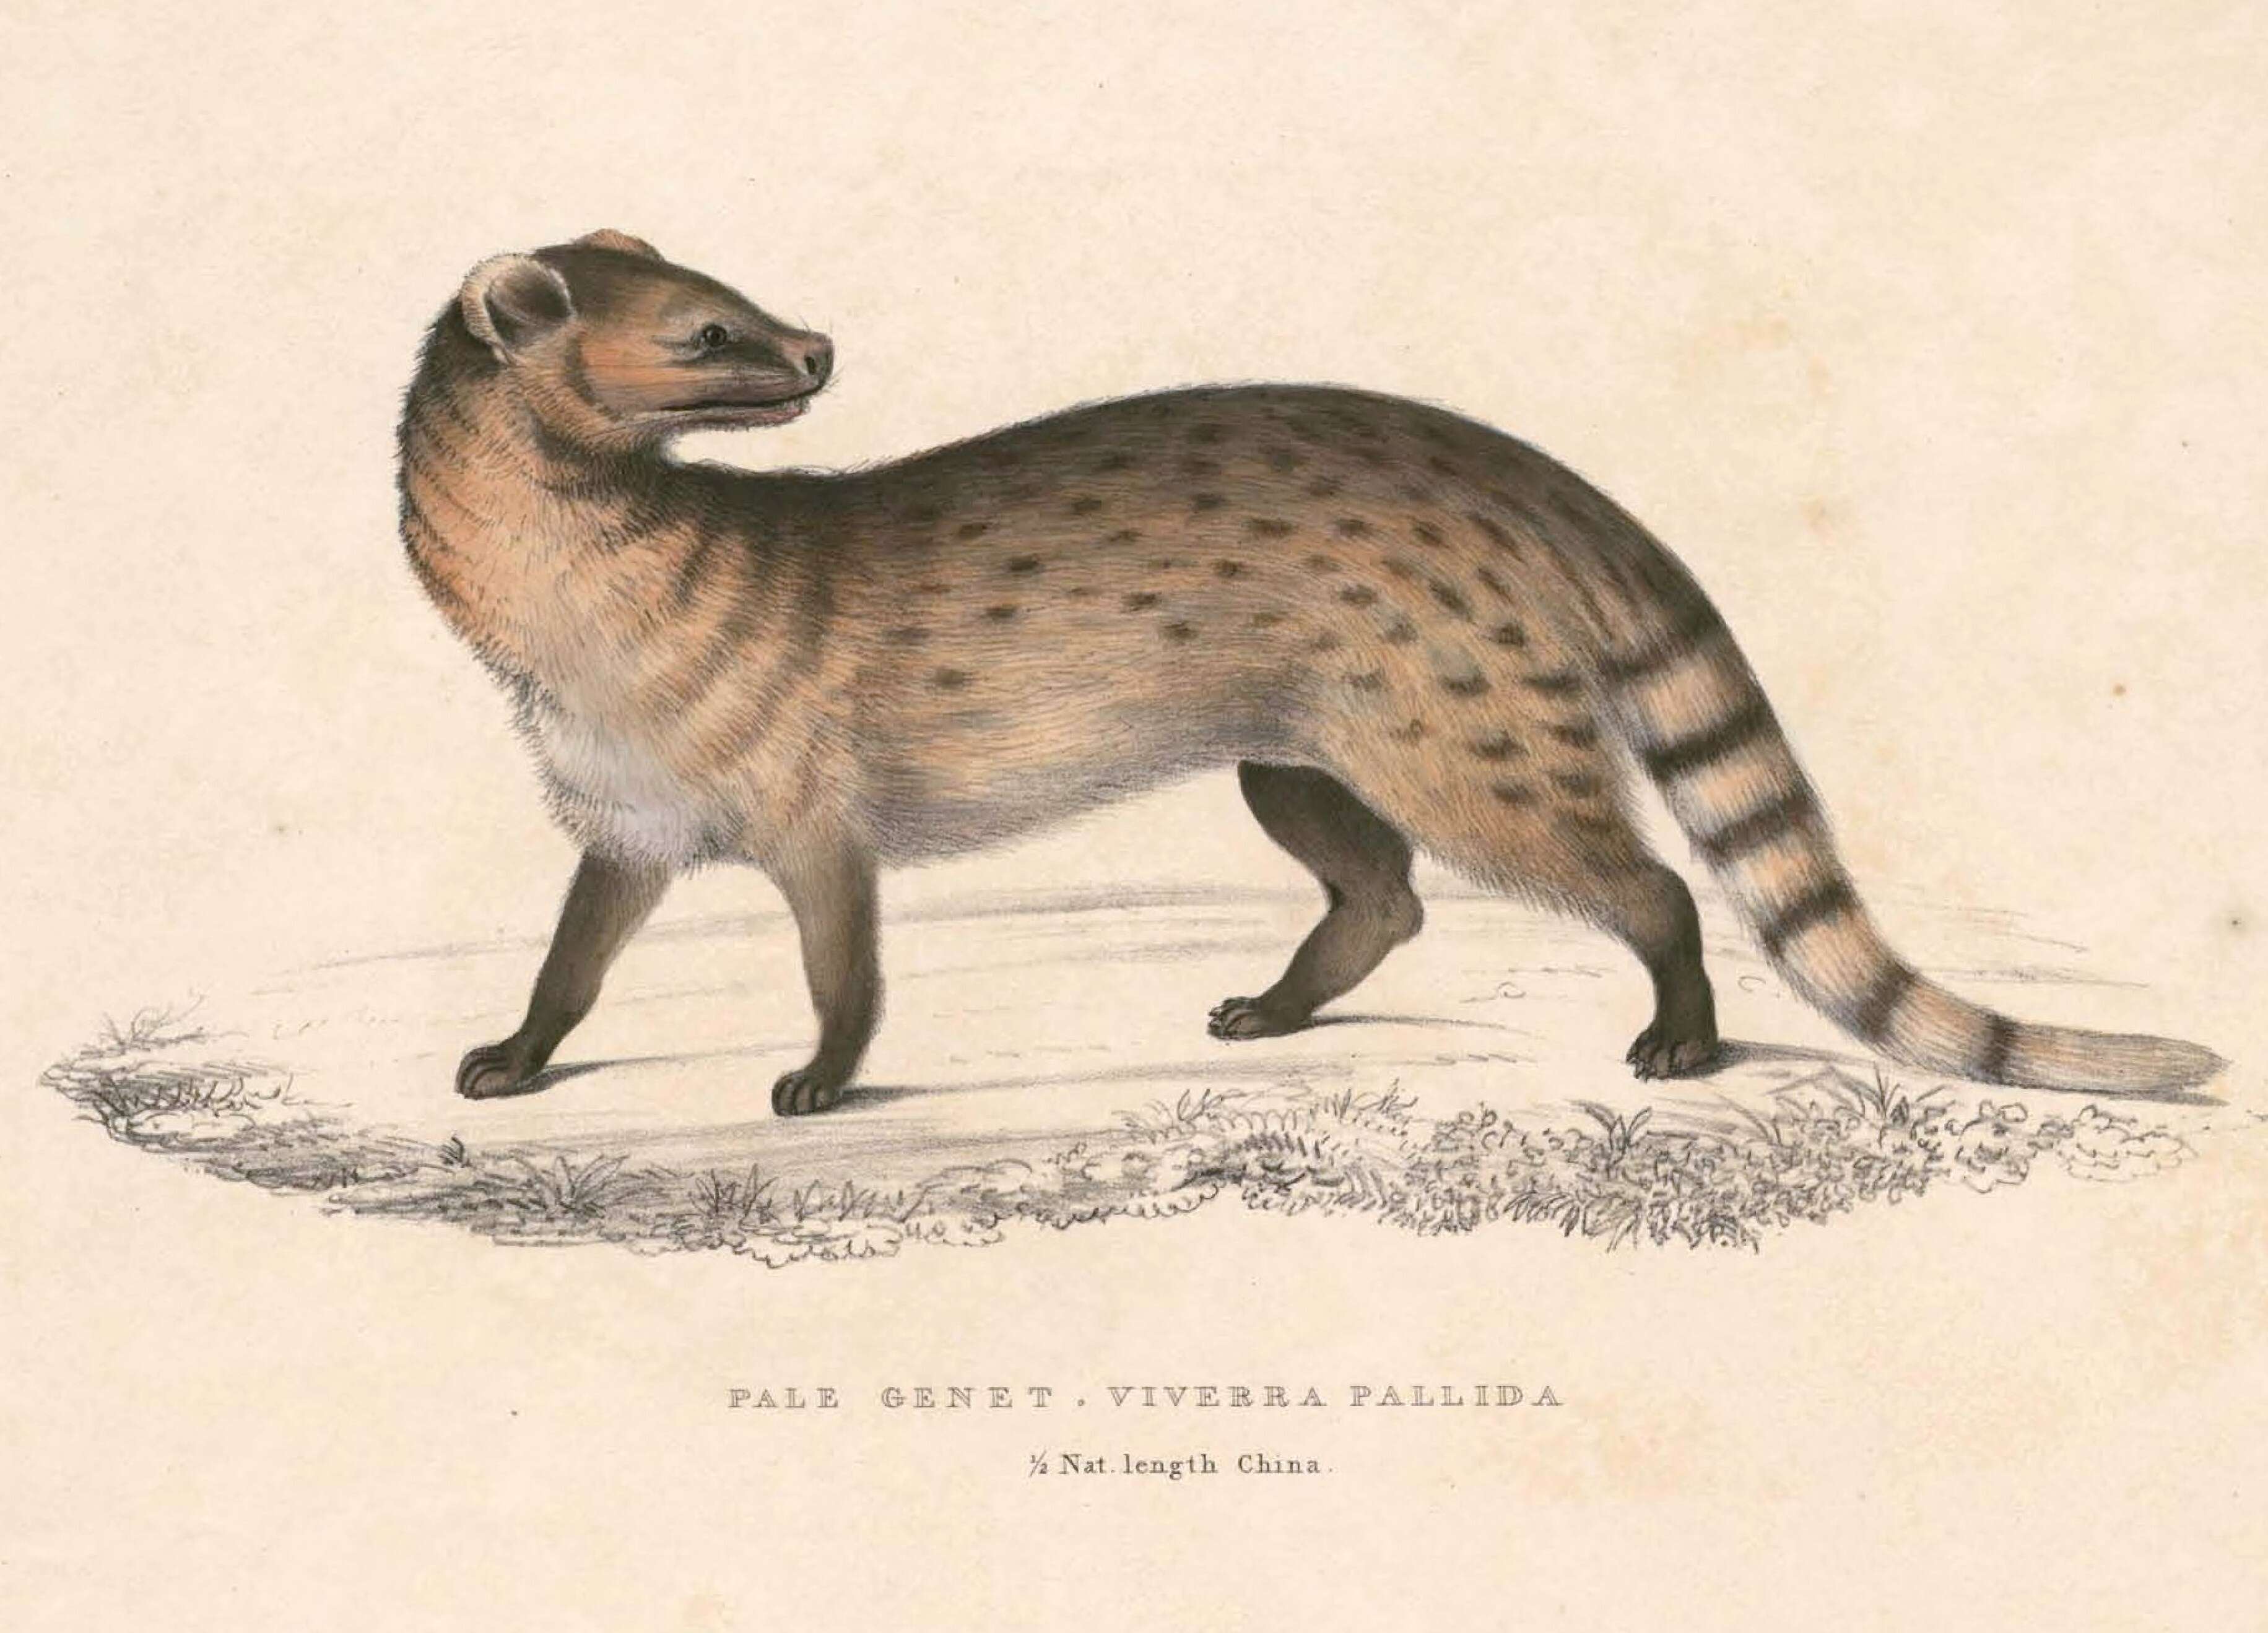 Image of Viverricula Hodgson 1838